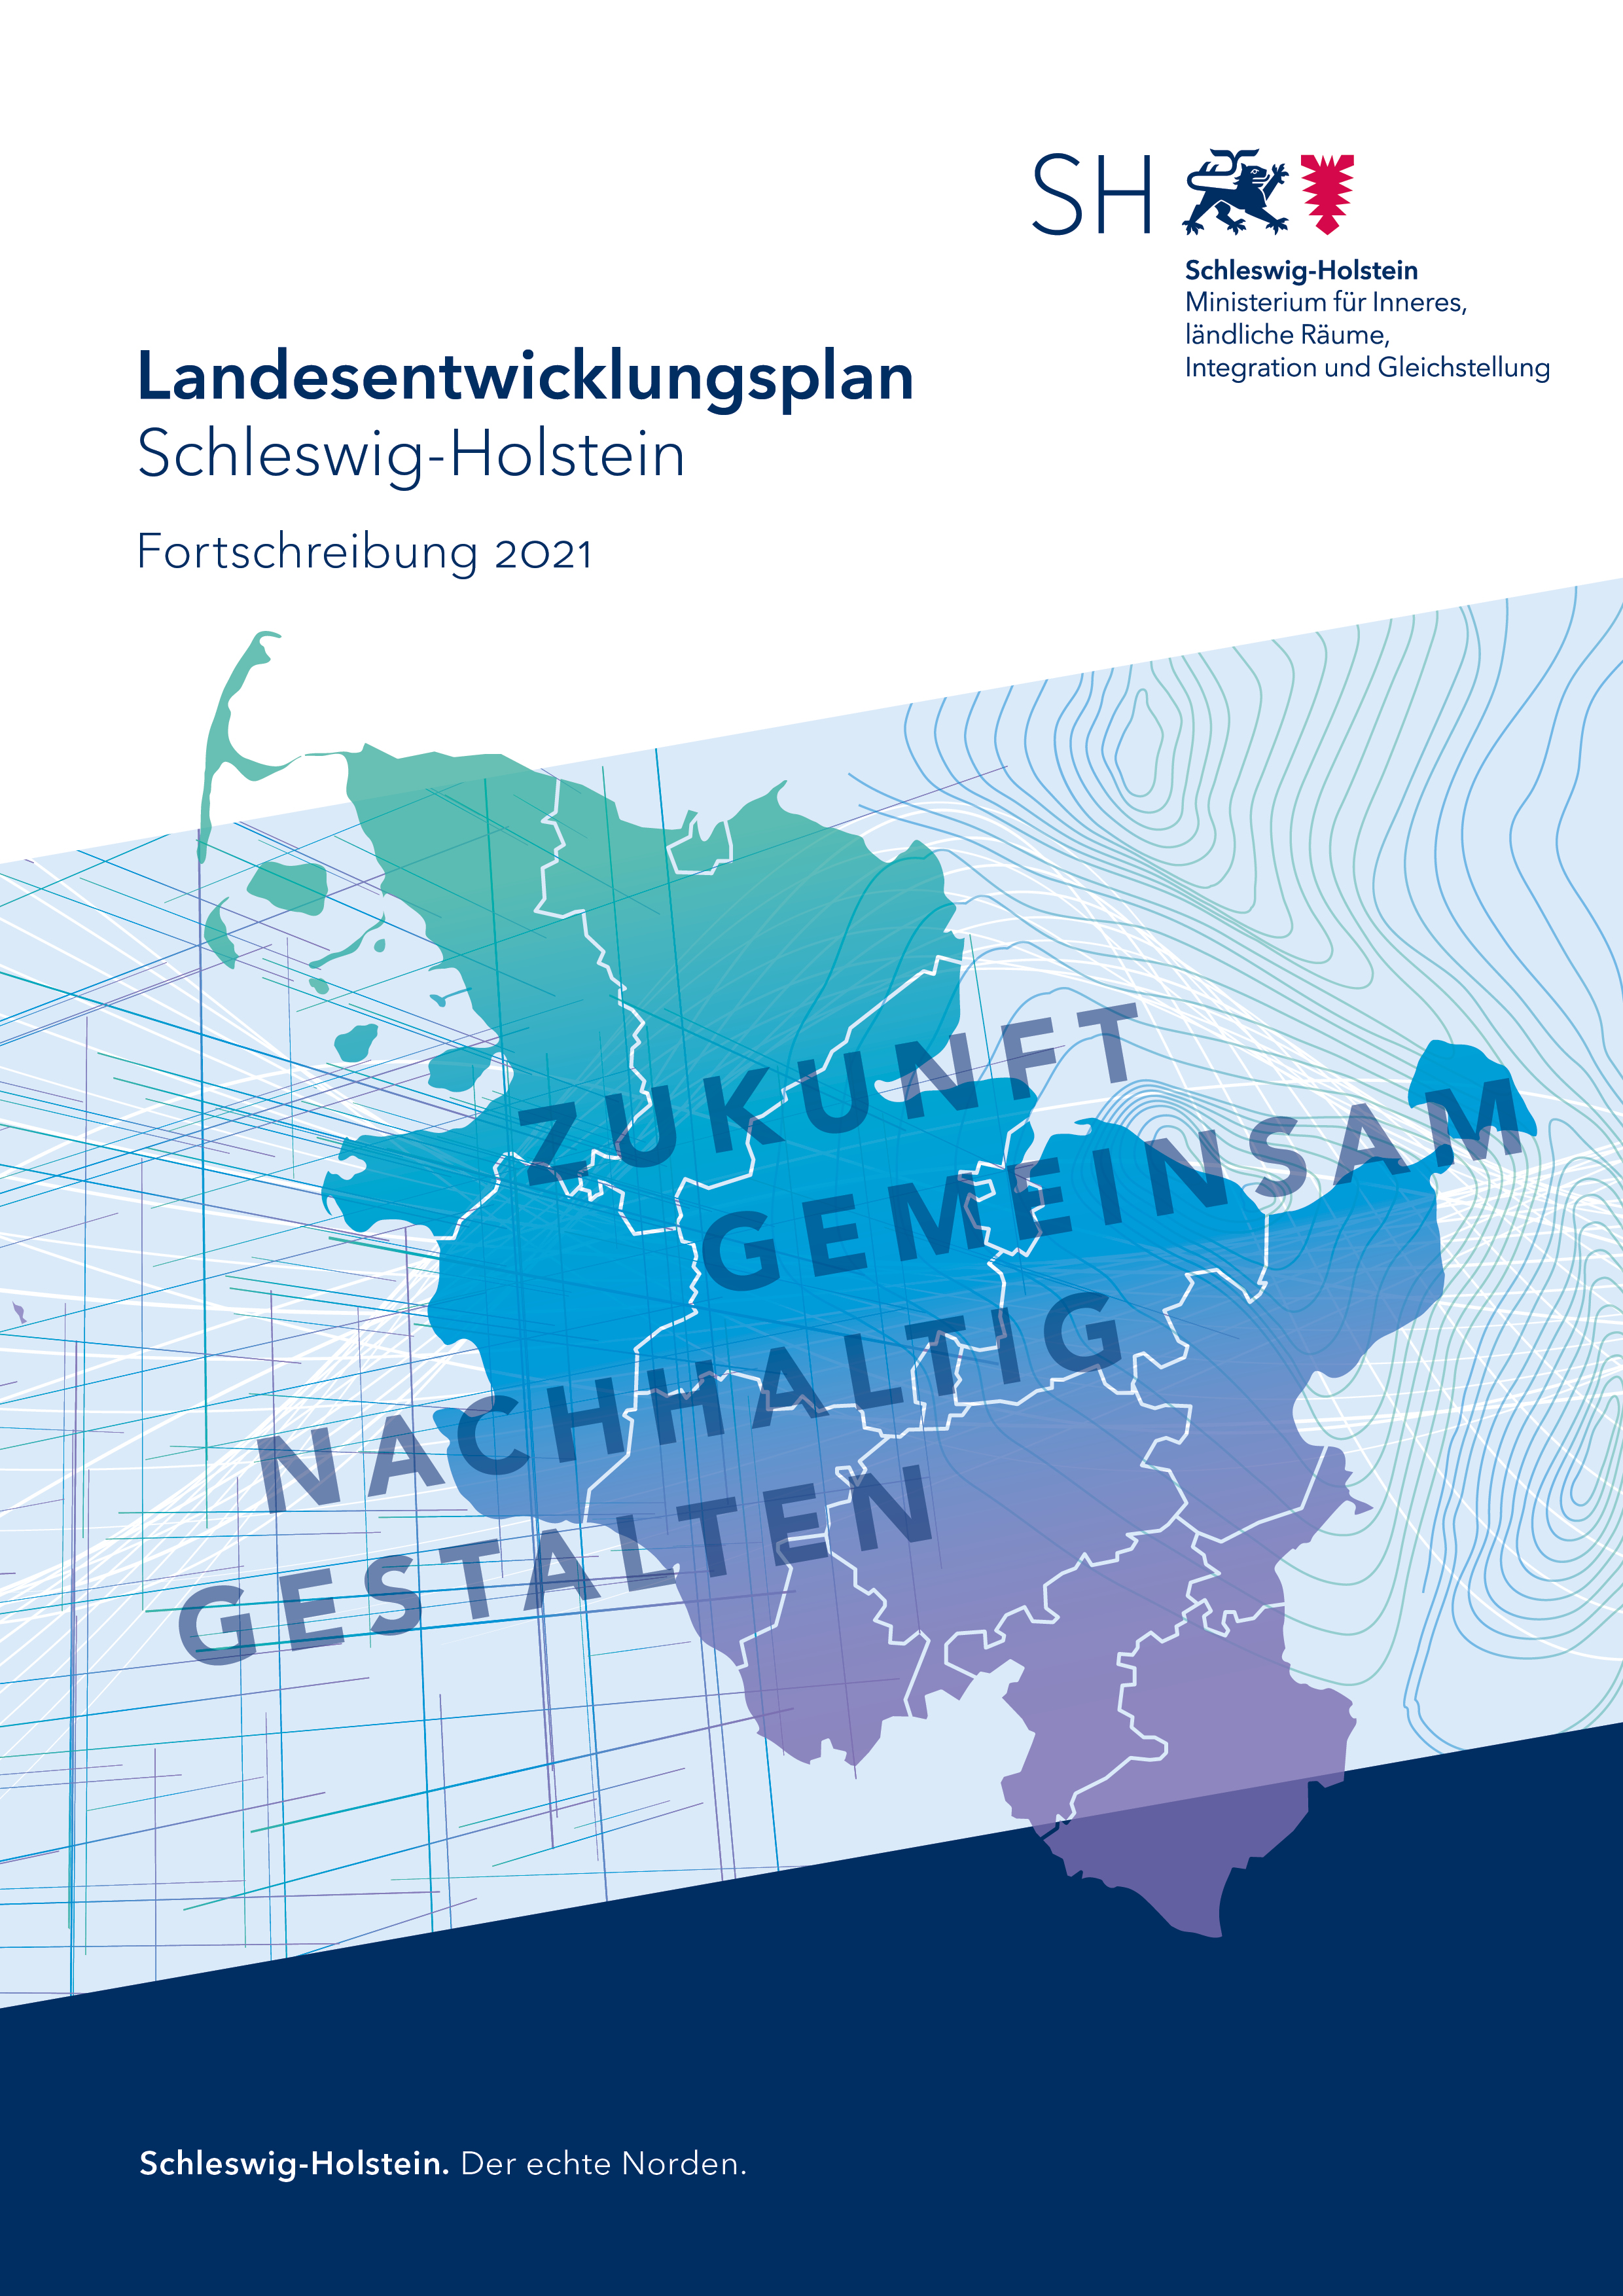 Abbildung für Landesentwicklungsplan Schleswig-Holstein - Fortschreibung 2021